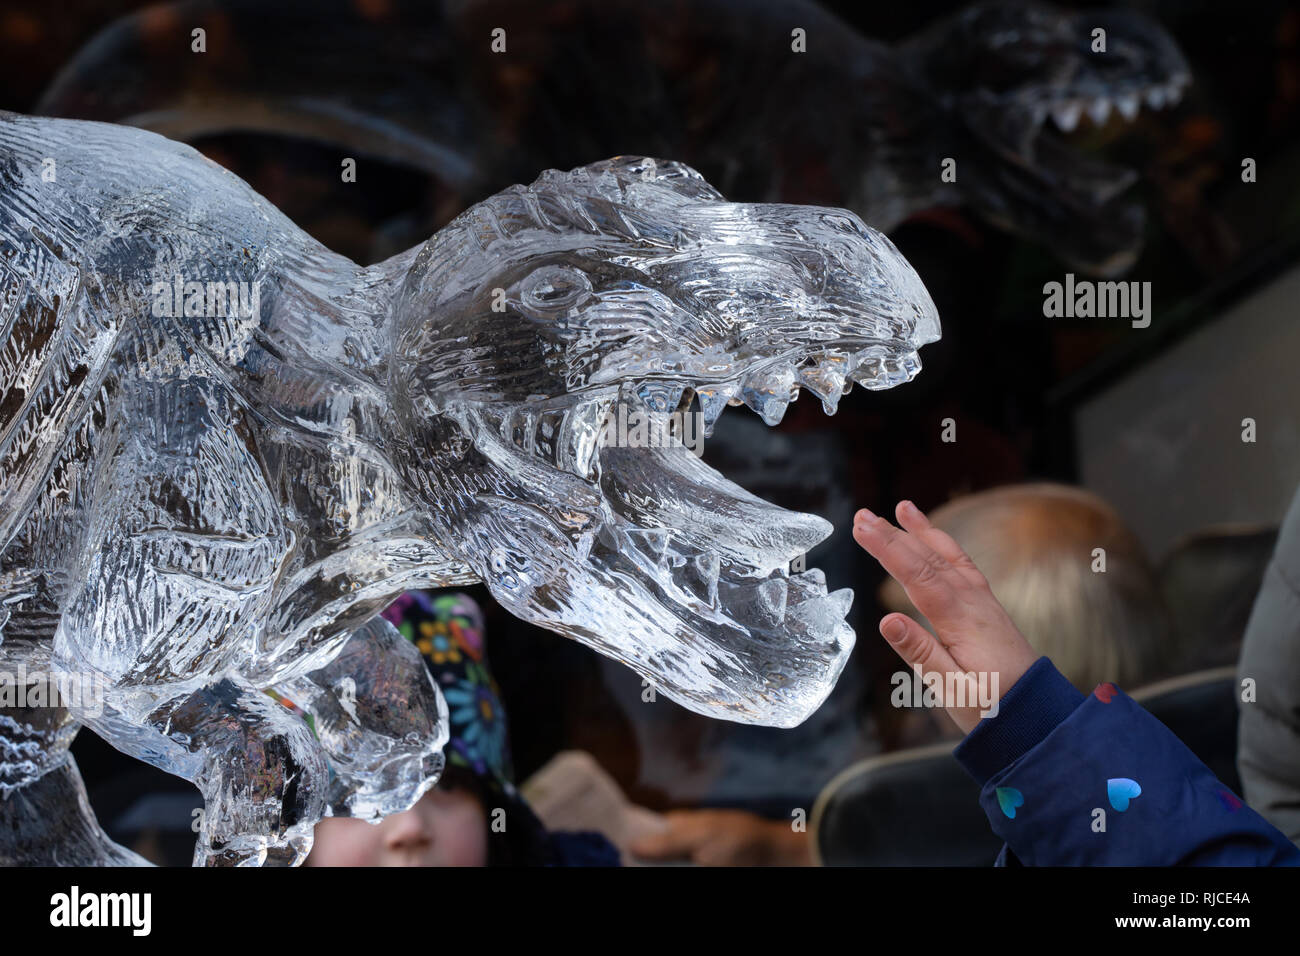 Sculpture sur glace de dinosaure, sentier de glace de York, Coppergate Center, York, North Yorkshire, Angleterre, Royaume-Uni. Banque D'Images